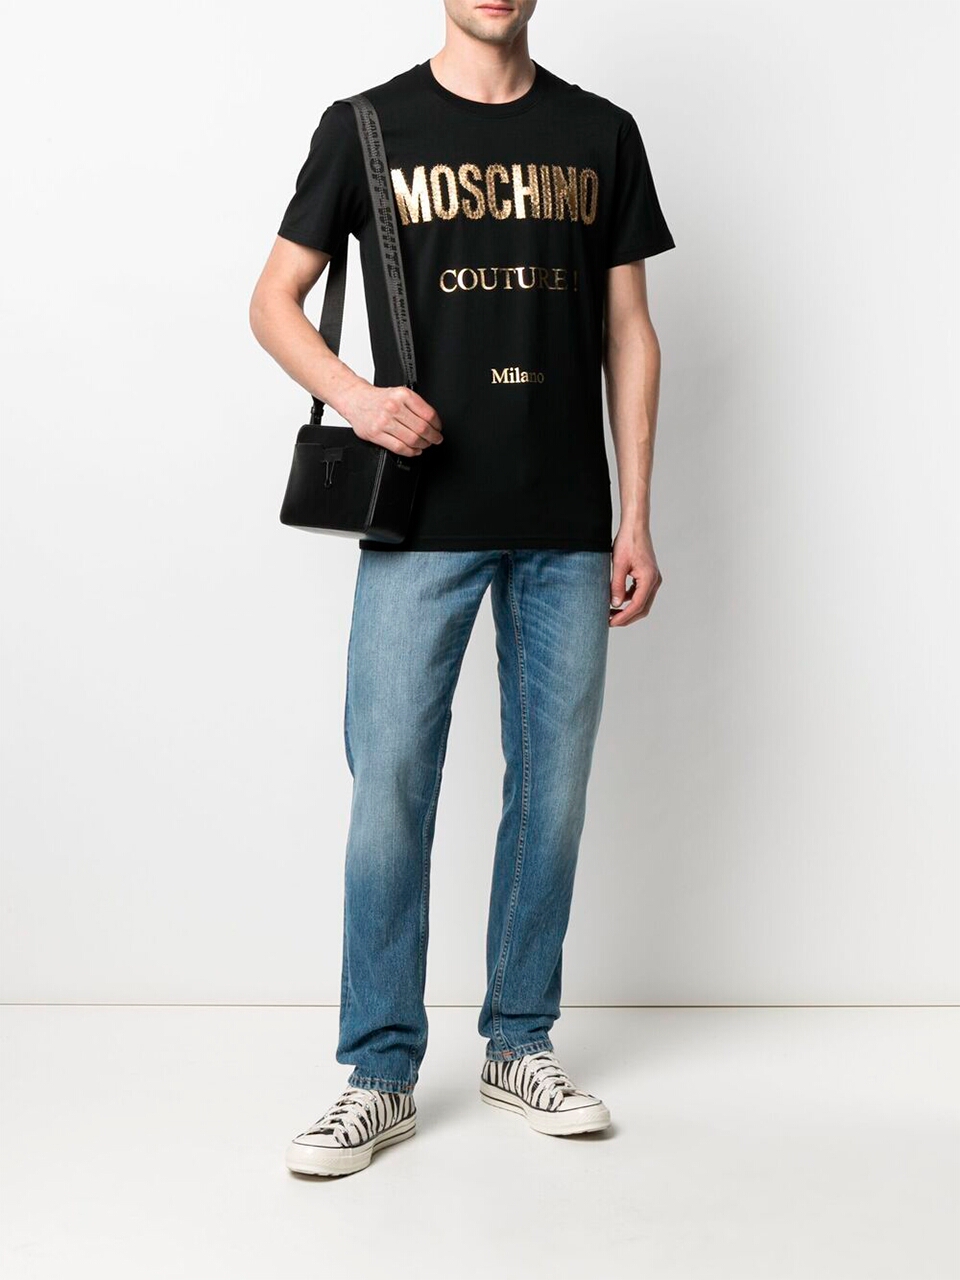 Imagem de: Camiseta Moschino Preta com Logo Couture Dourado